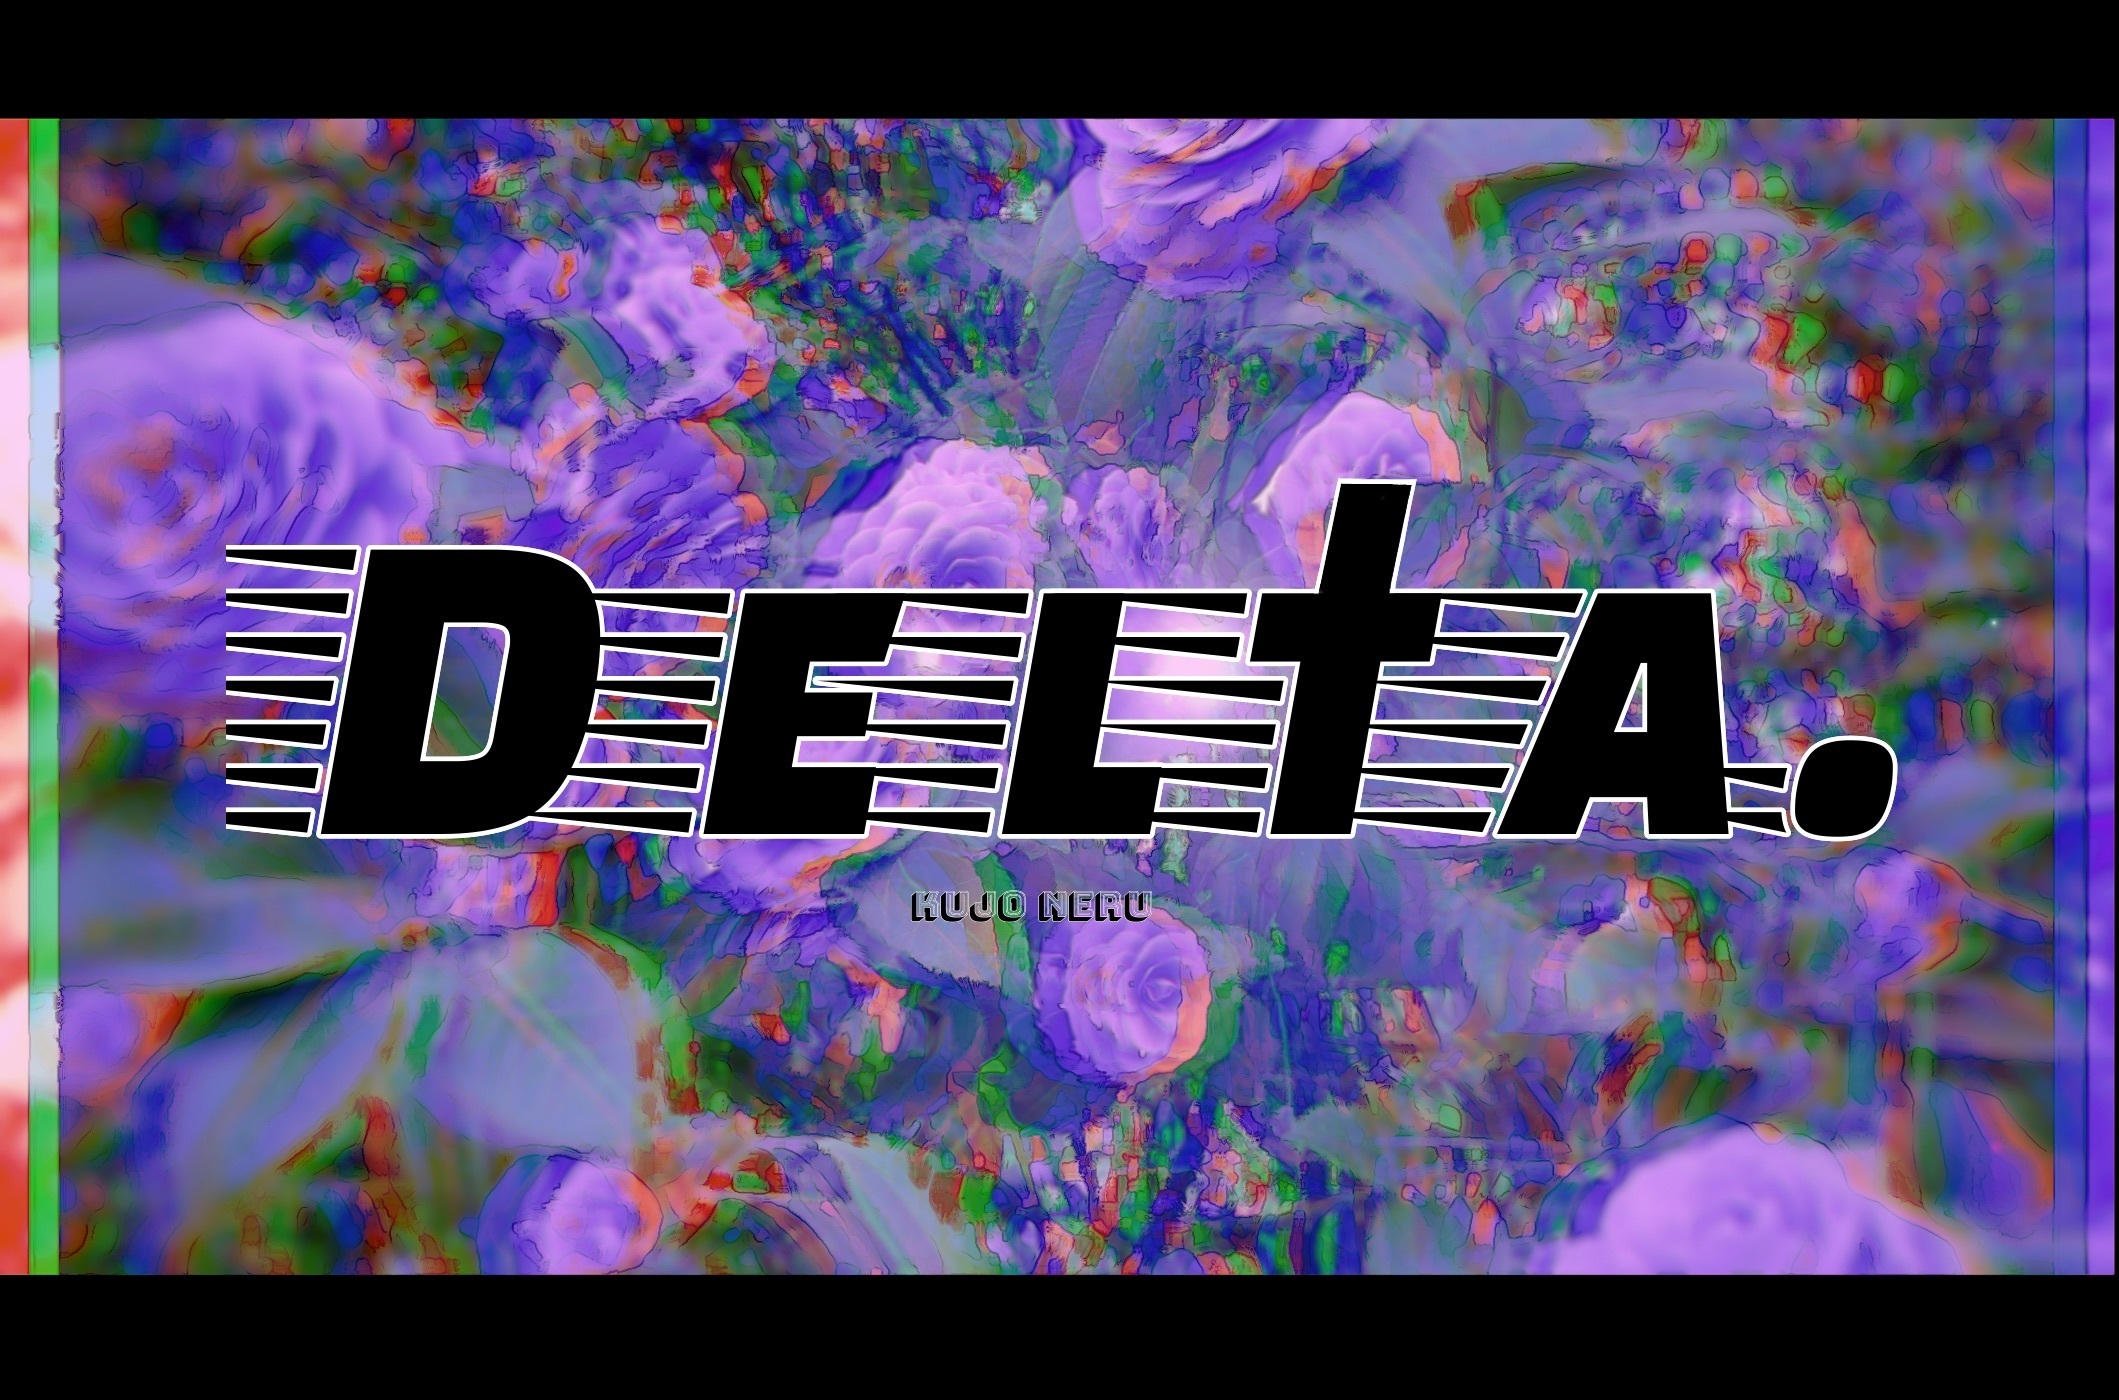 Delta.